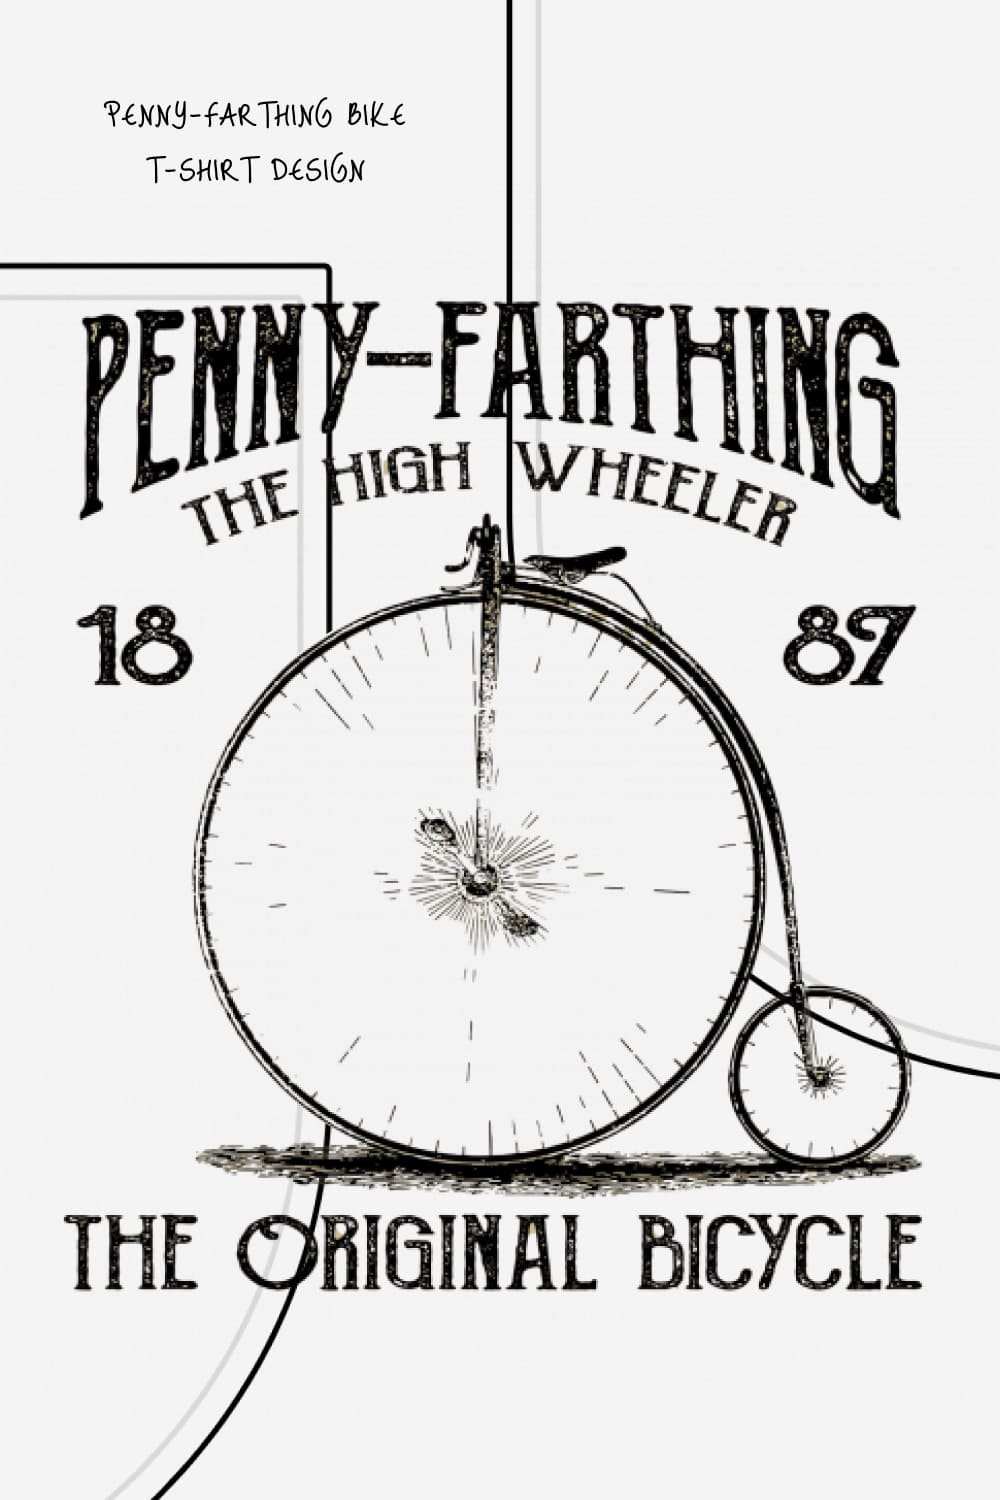 Penny-Farthing Bike T-Shirt Design - Pinterest.